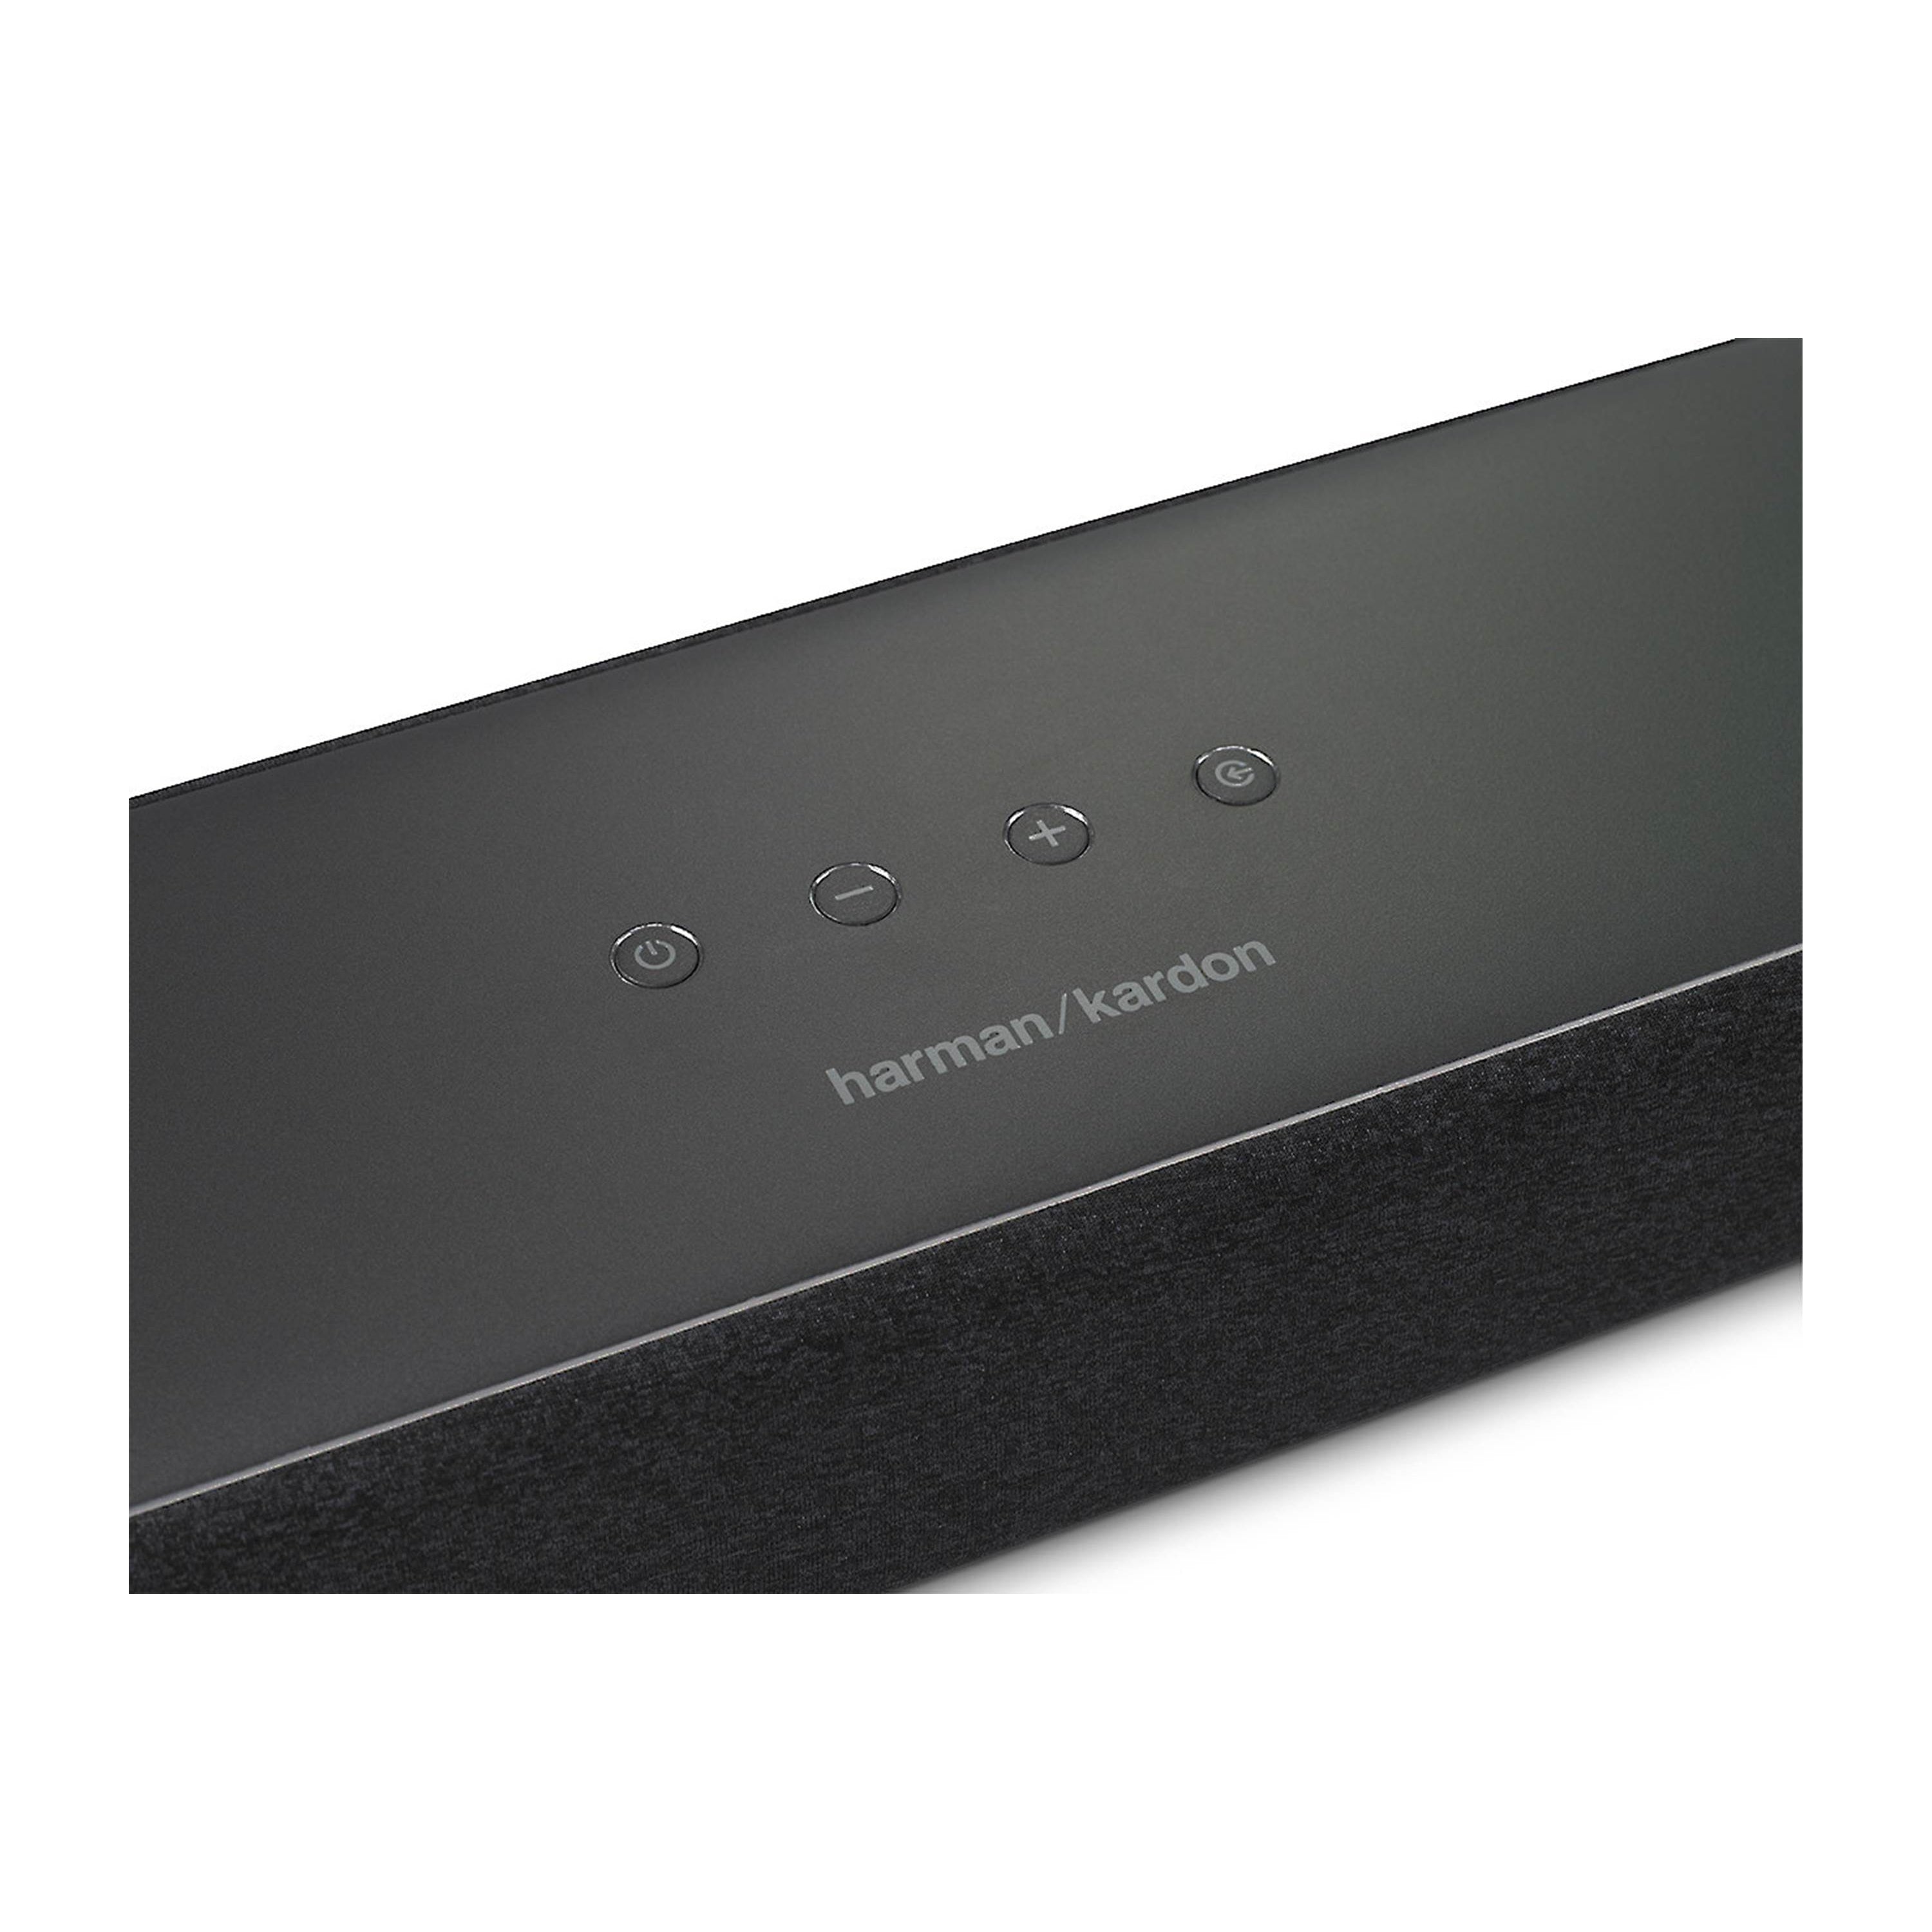 Harman / Kardon Enchant 800 Bluetooth Wi-Fi All-in-One Sound Bar - Refurbished Good